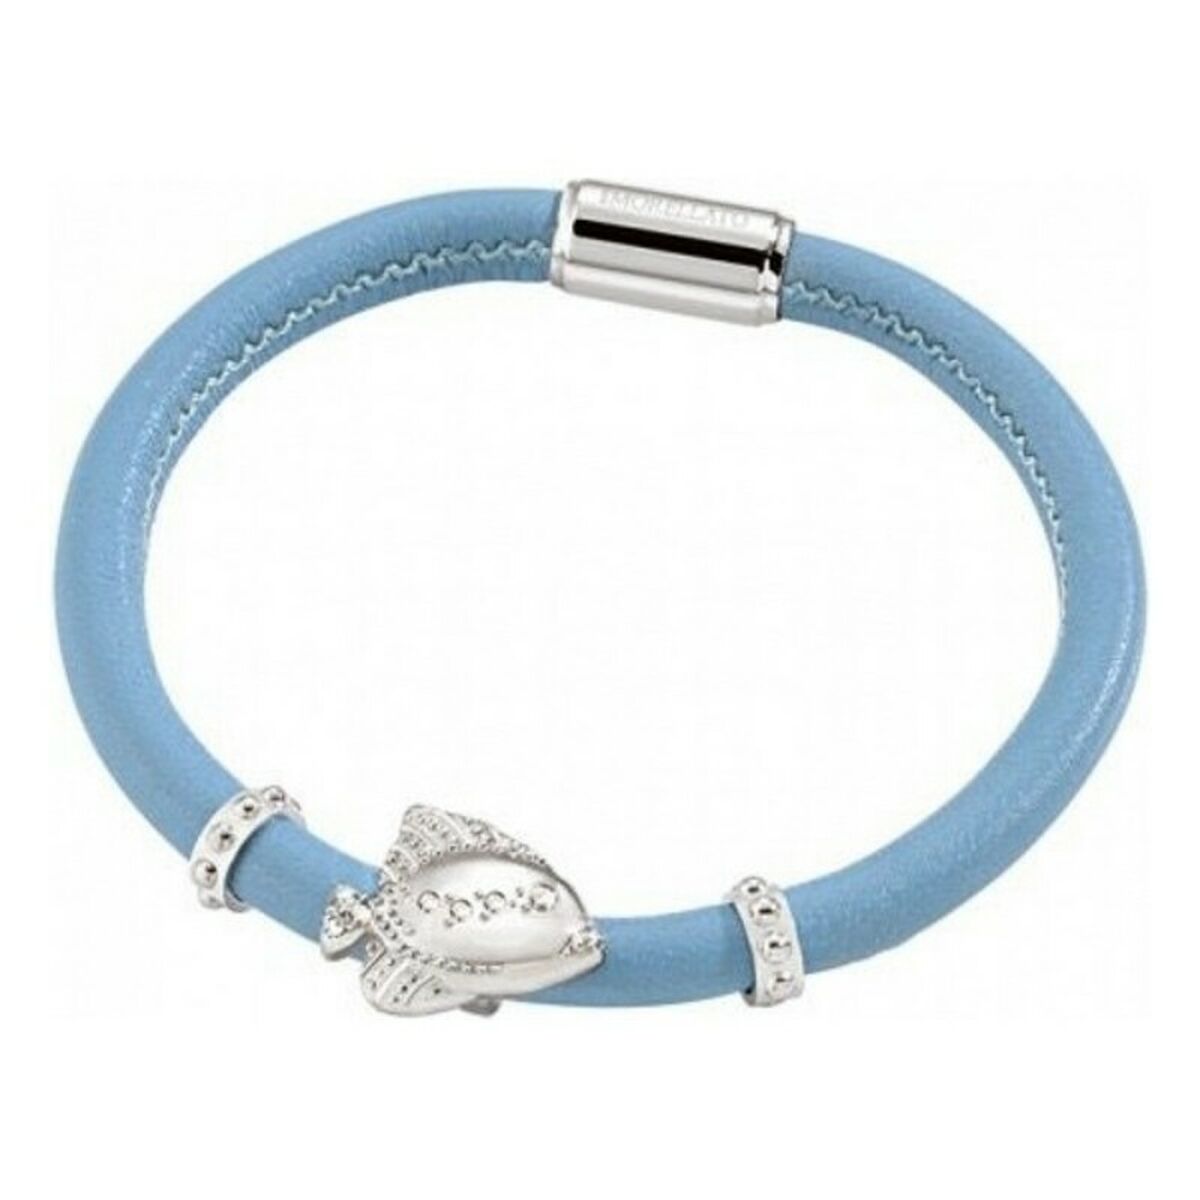 Bracelet Femme avec Cristaux Morellato SADZ06 Verre Argenté Bleu Acier Cuir (19,5 cm)